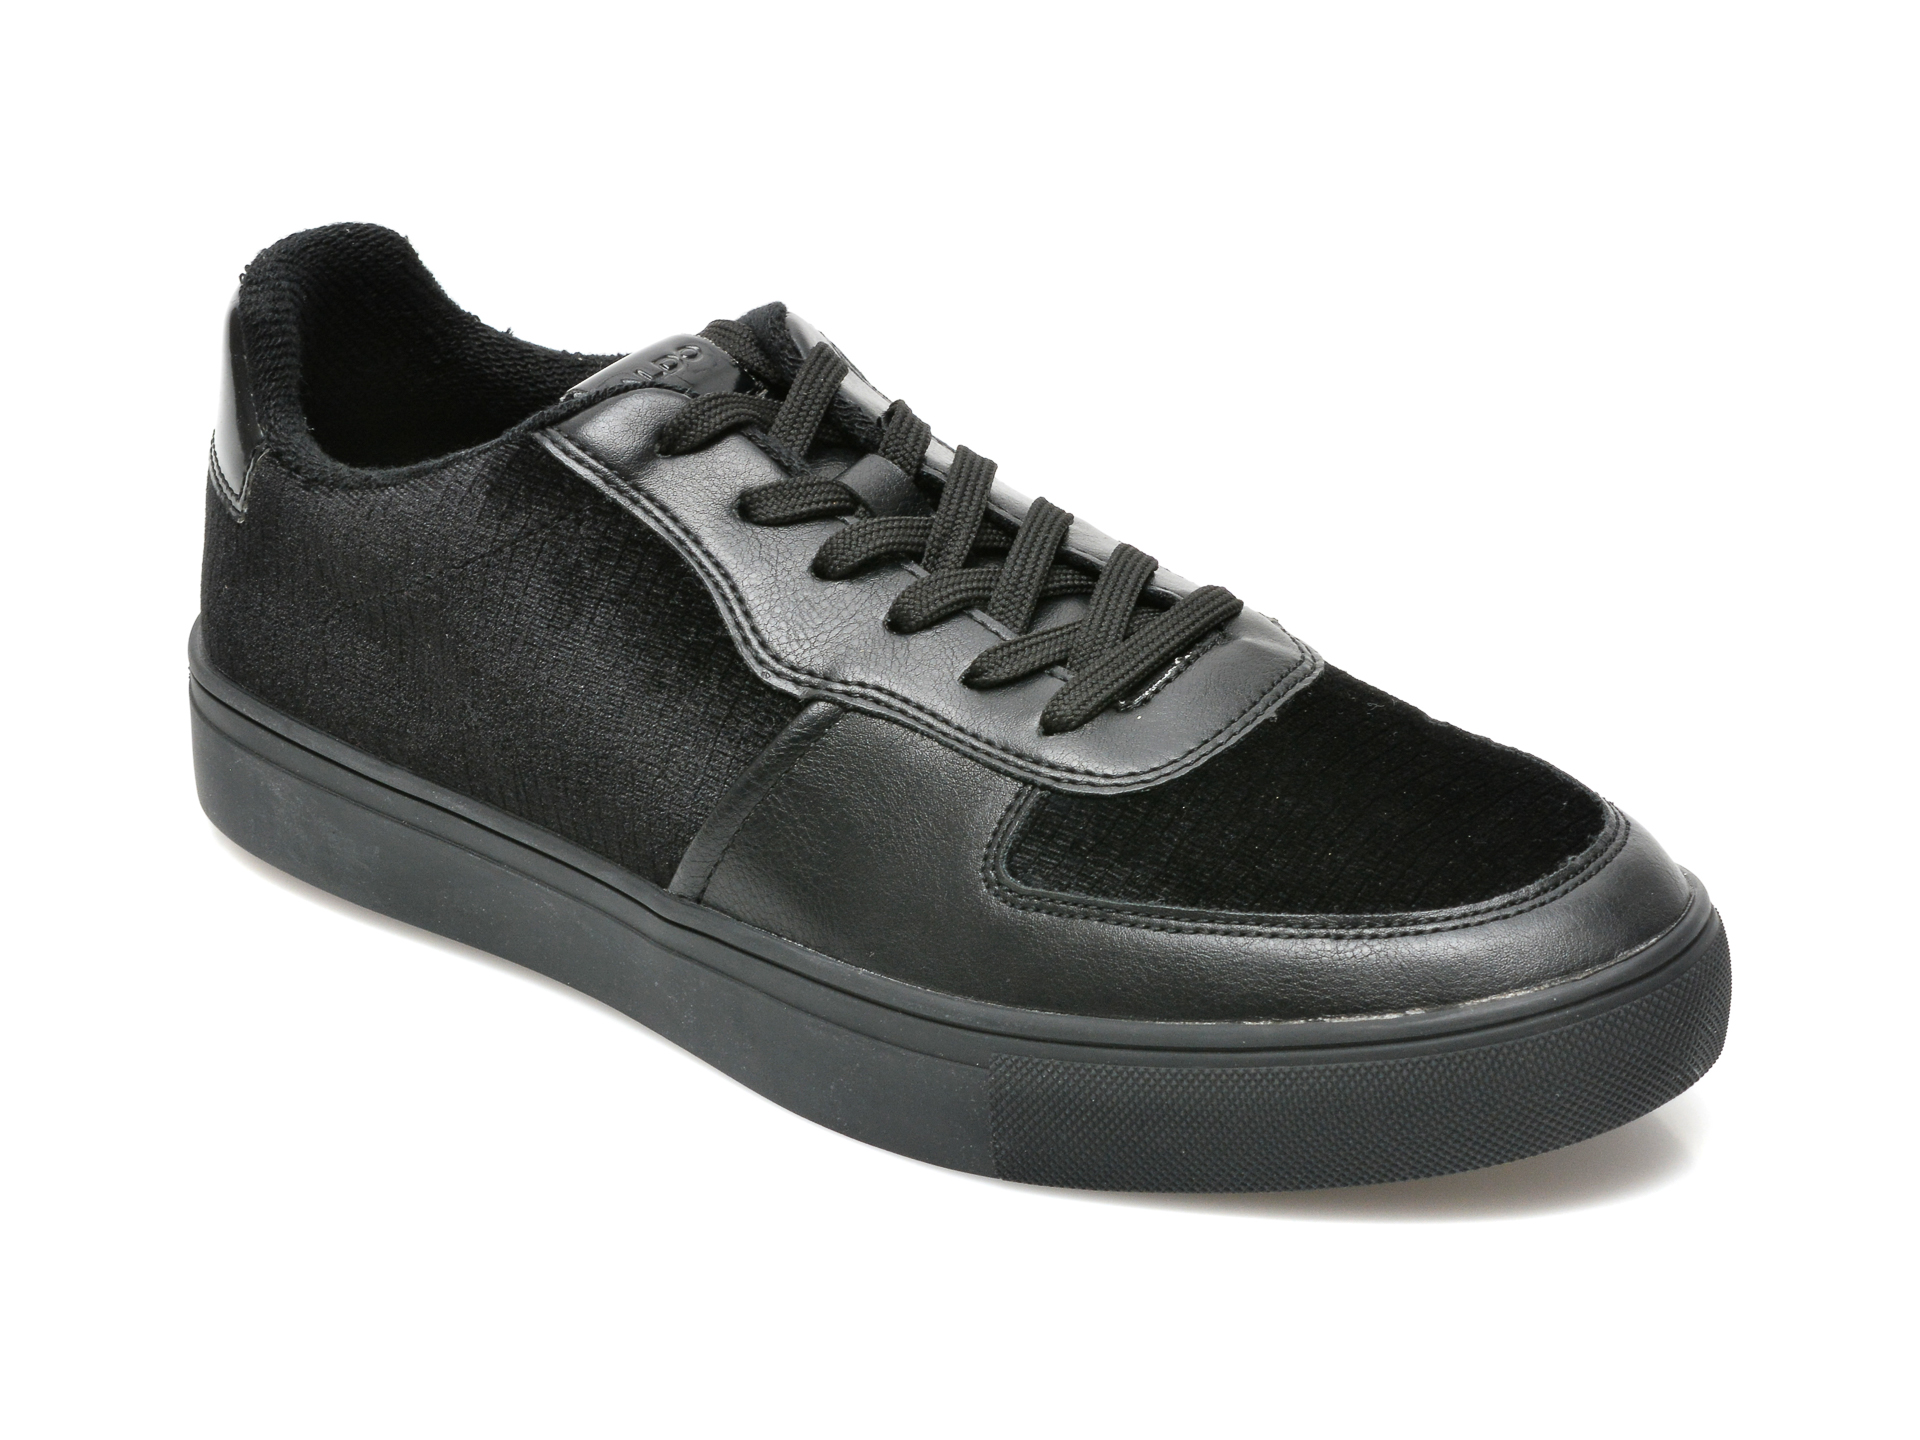 Pantofi ALDO negri, 13265404, din material textil si piele ecologica Aldo Aldo